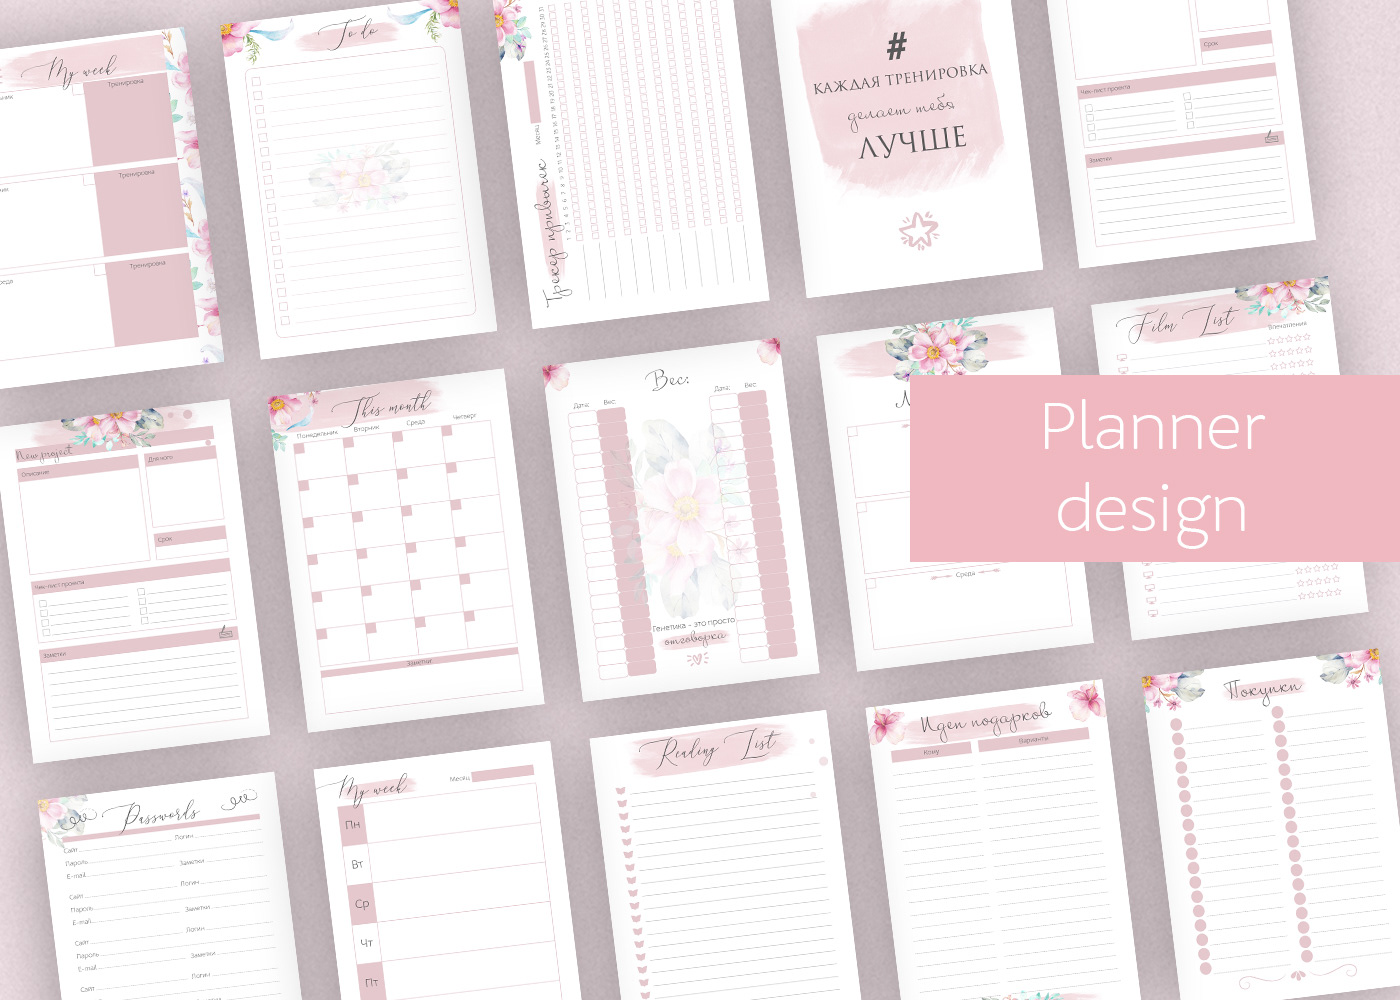 InDesign Layout magazine notebook planner planner design print